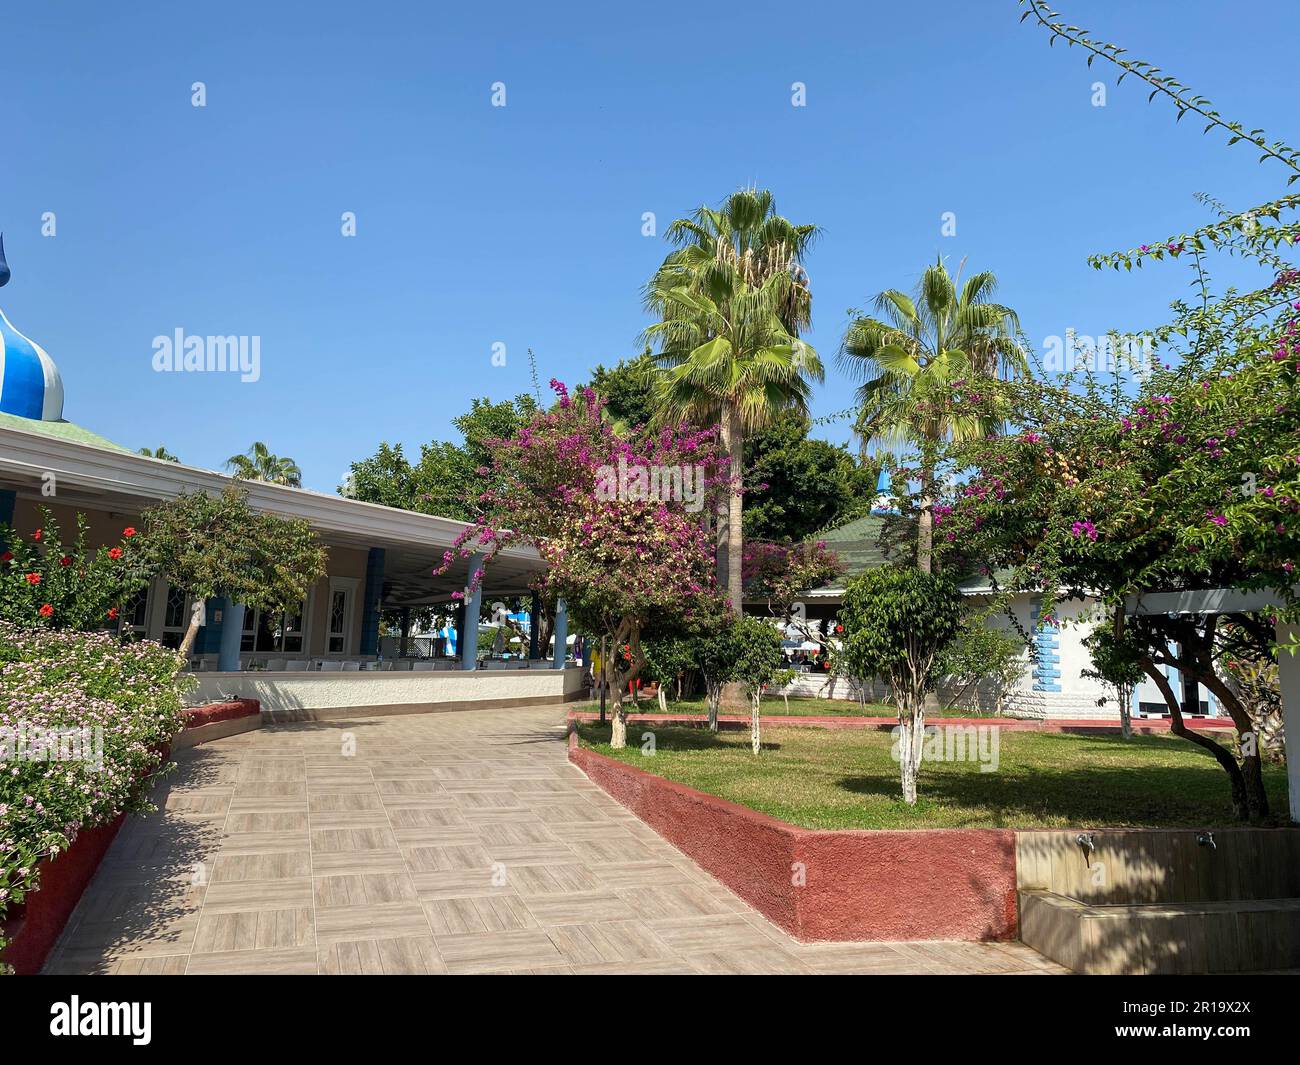 Belles plantes et palmiers, aménagement paysager dans un hôtel en vacances dans un complexe tropical chaud de pays paradisiaque du sud. Banque D'Images